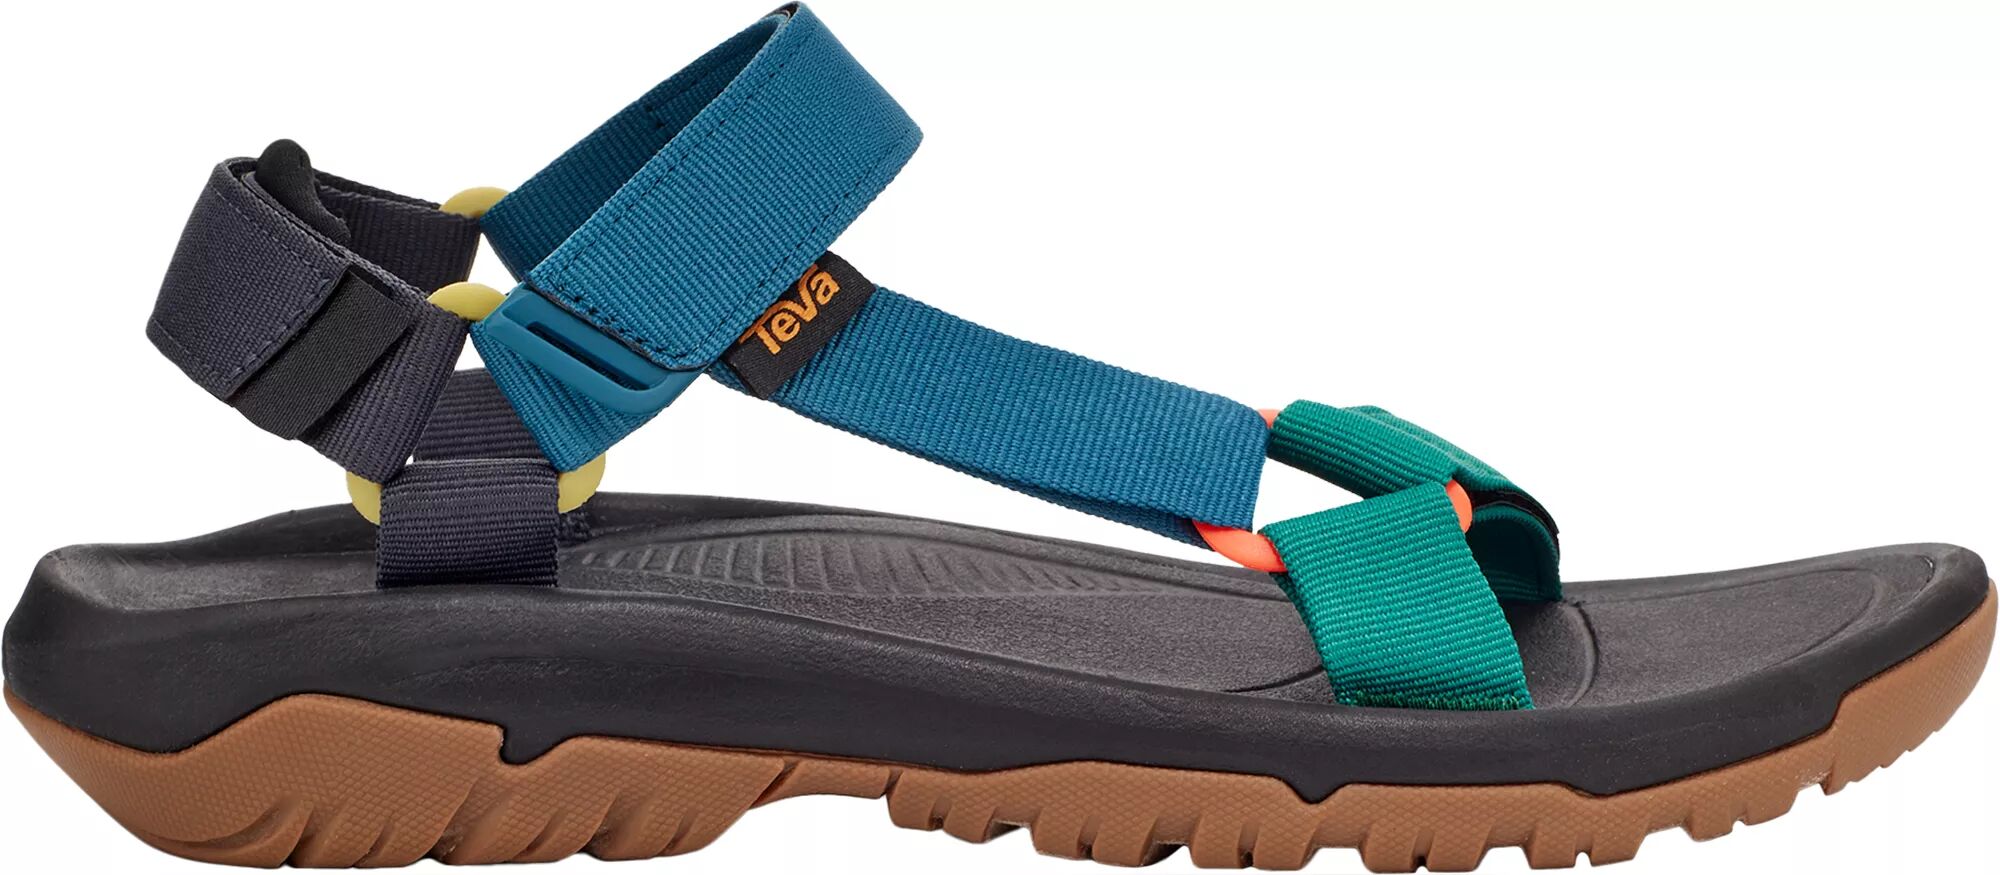 Teva Men's Hurricane XLT2 Sandals, Size 12, Blue